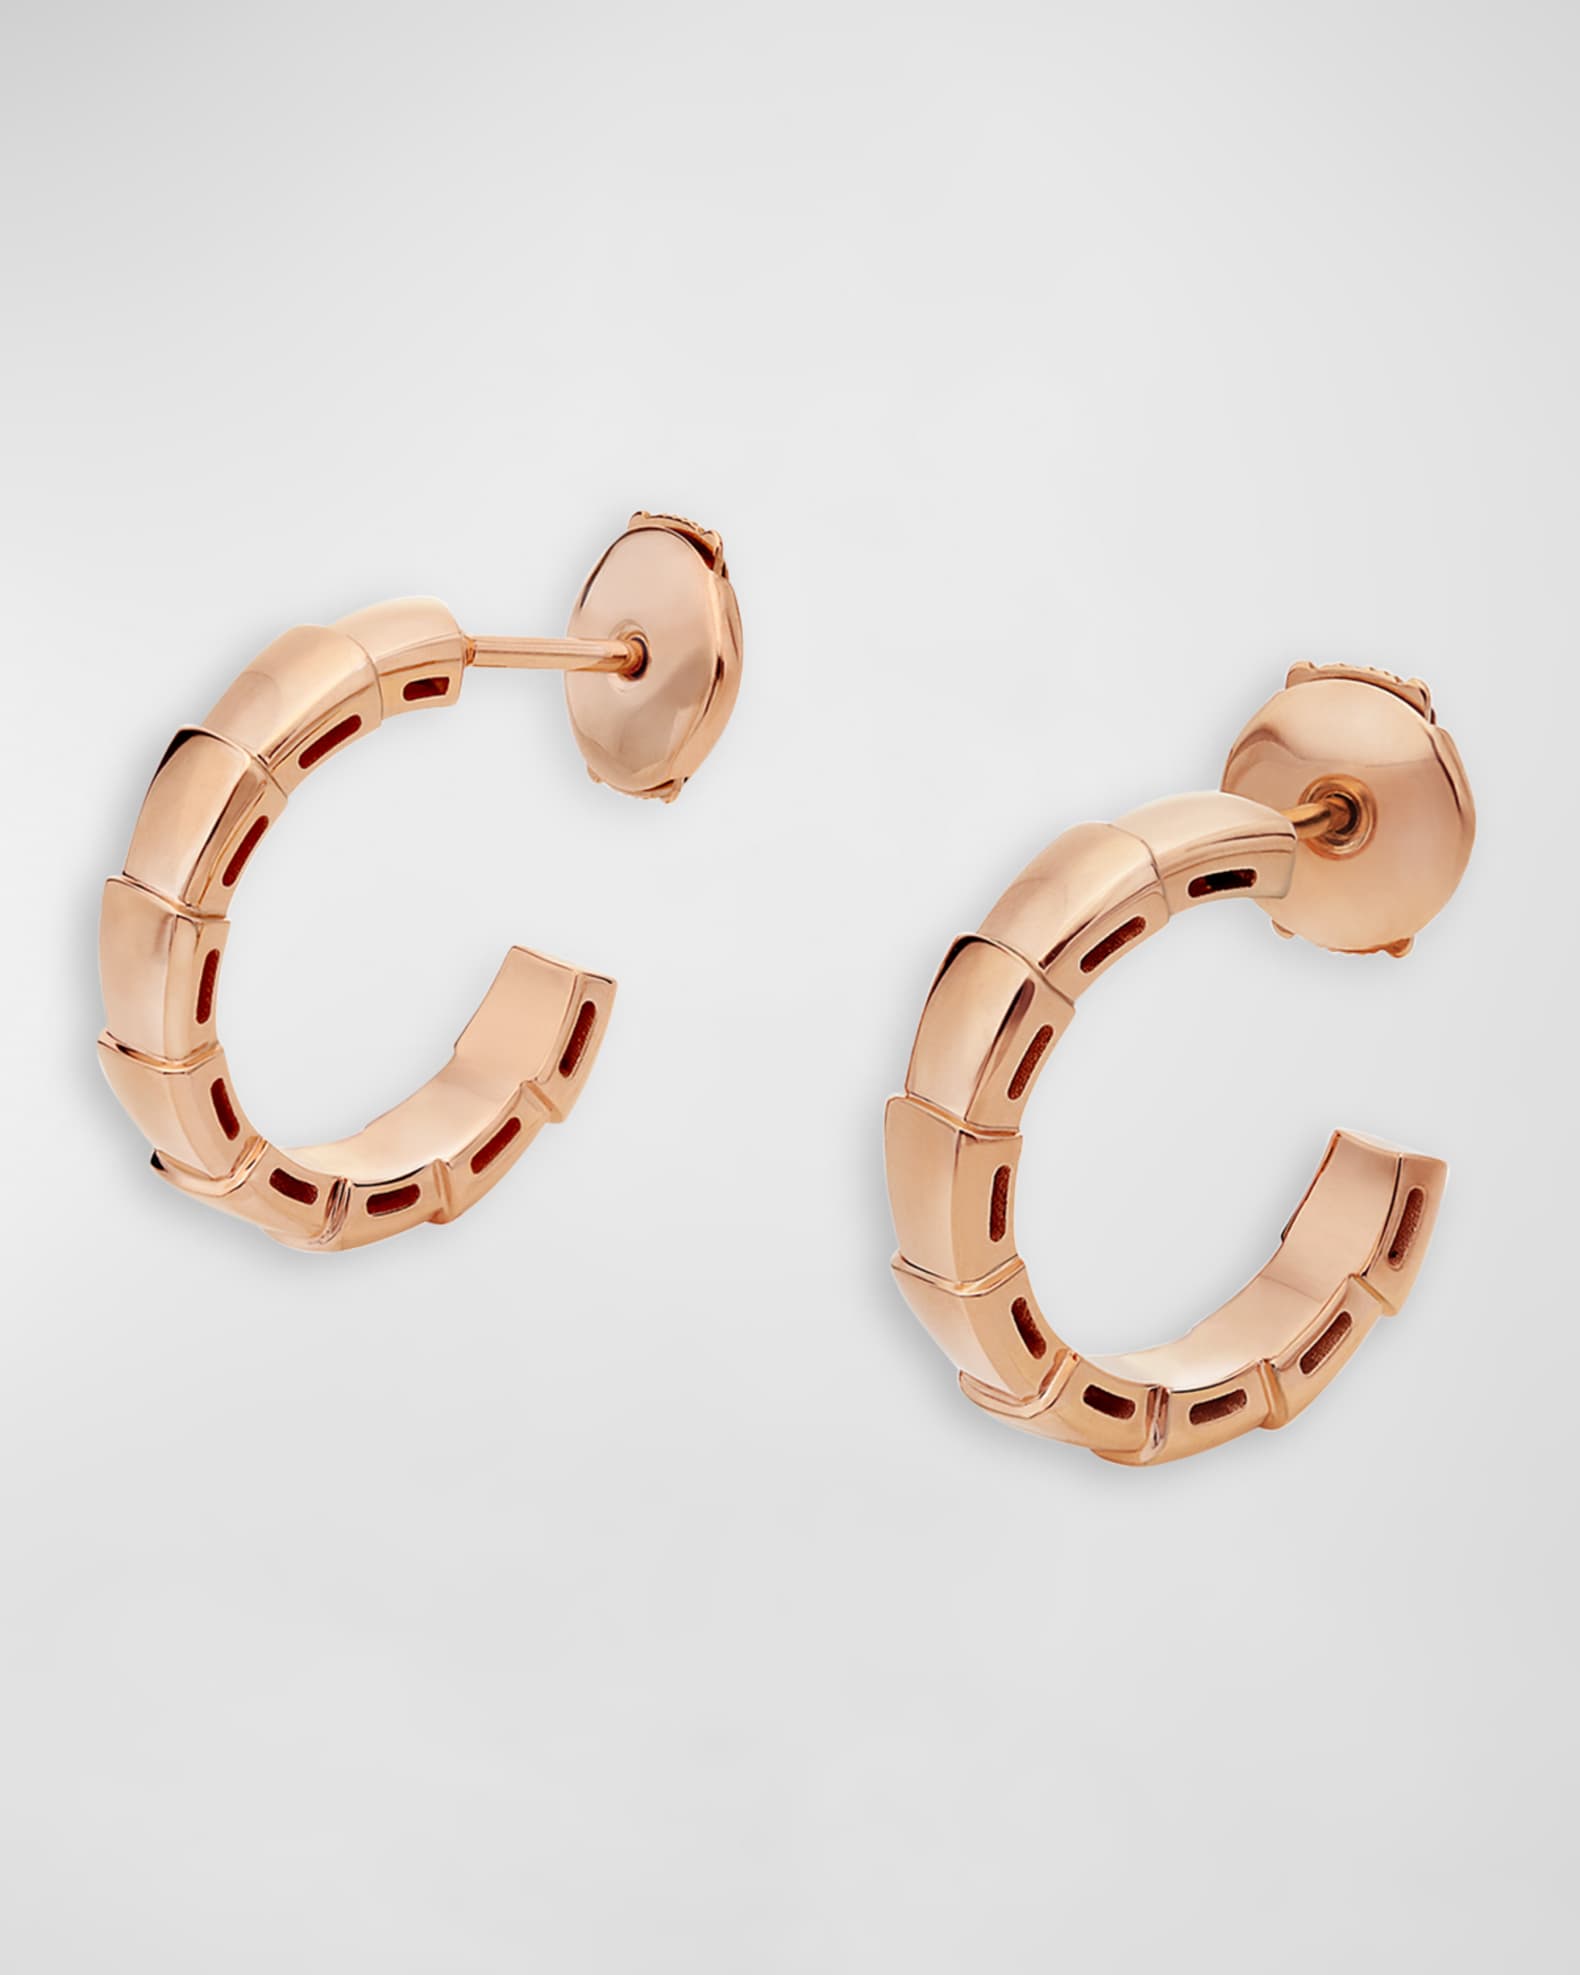 BVLGARI Serpenti Viper Huggie Hoop Earrings in 18k Rose Gold | Neiman Marcus